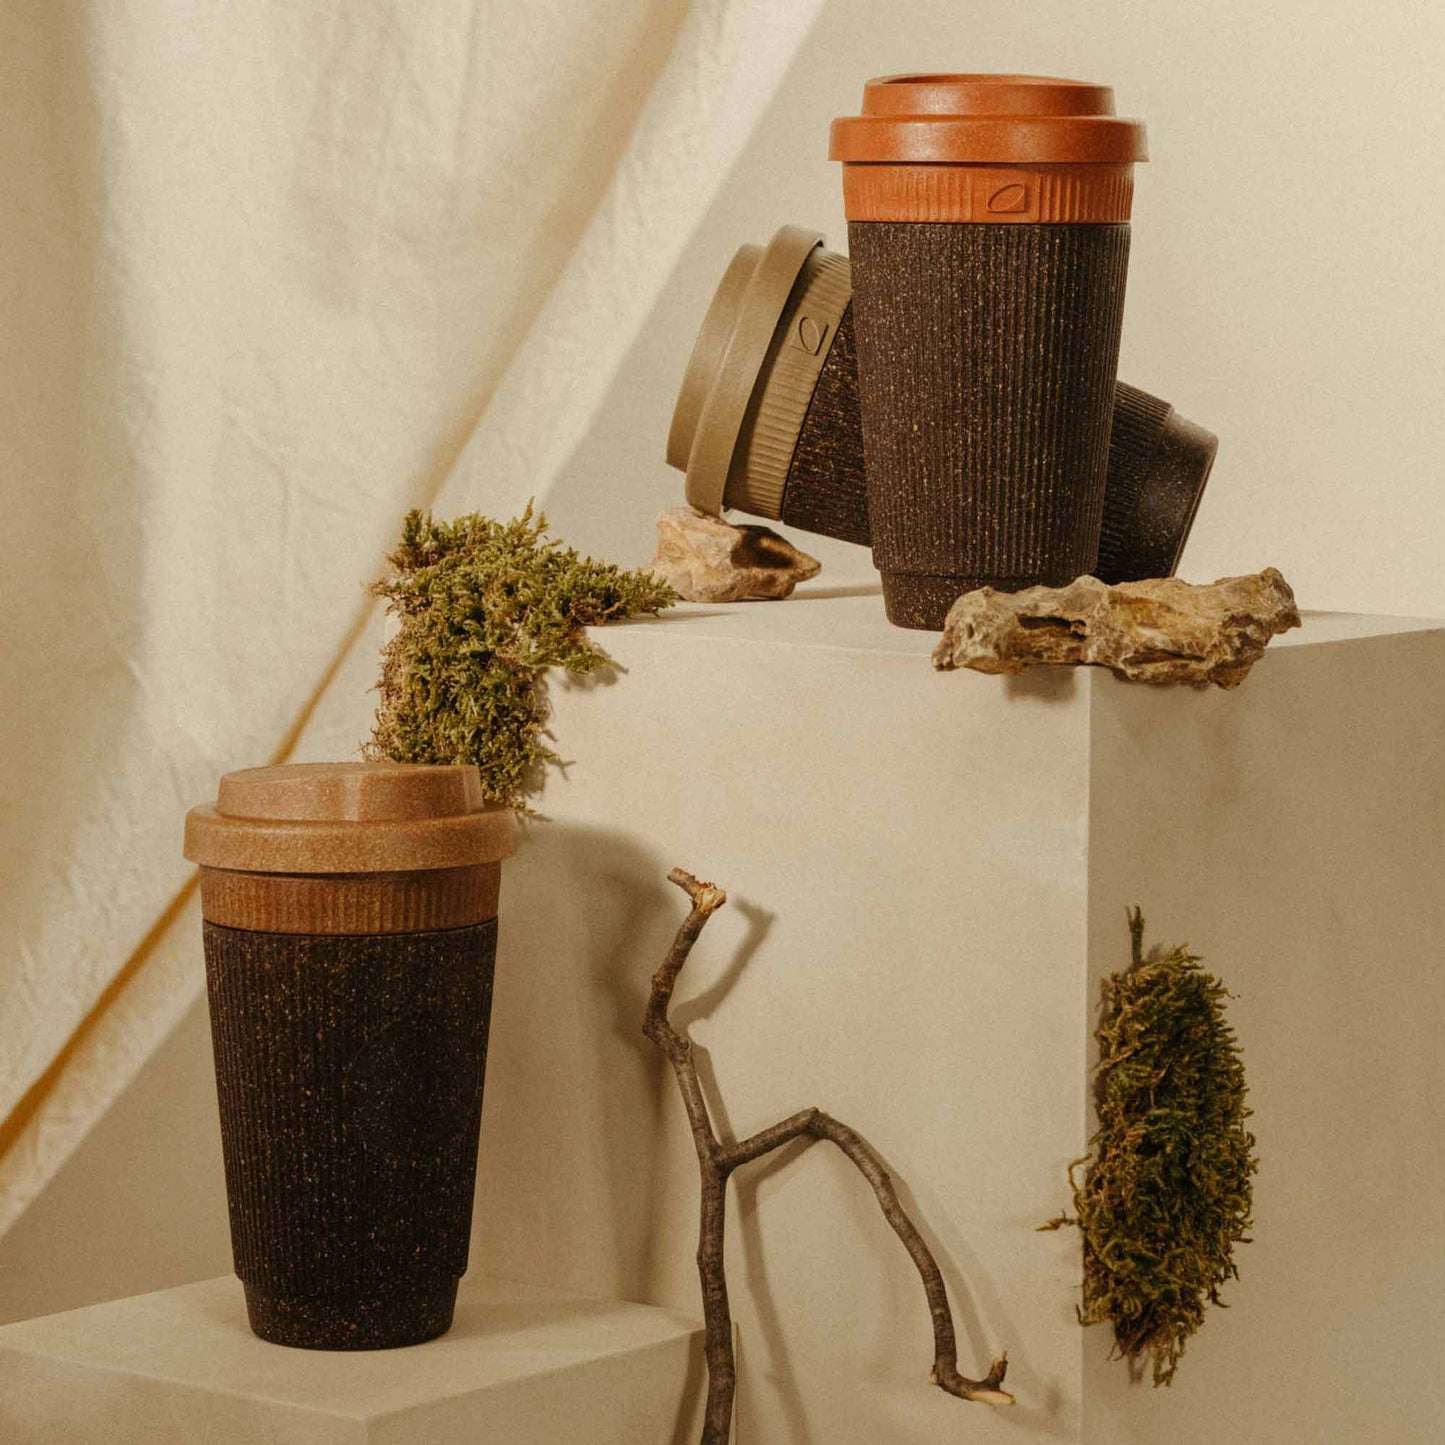 Weducer Cup - To-Go-Becher aus recyceltem Kaffeesatz